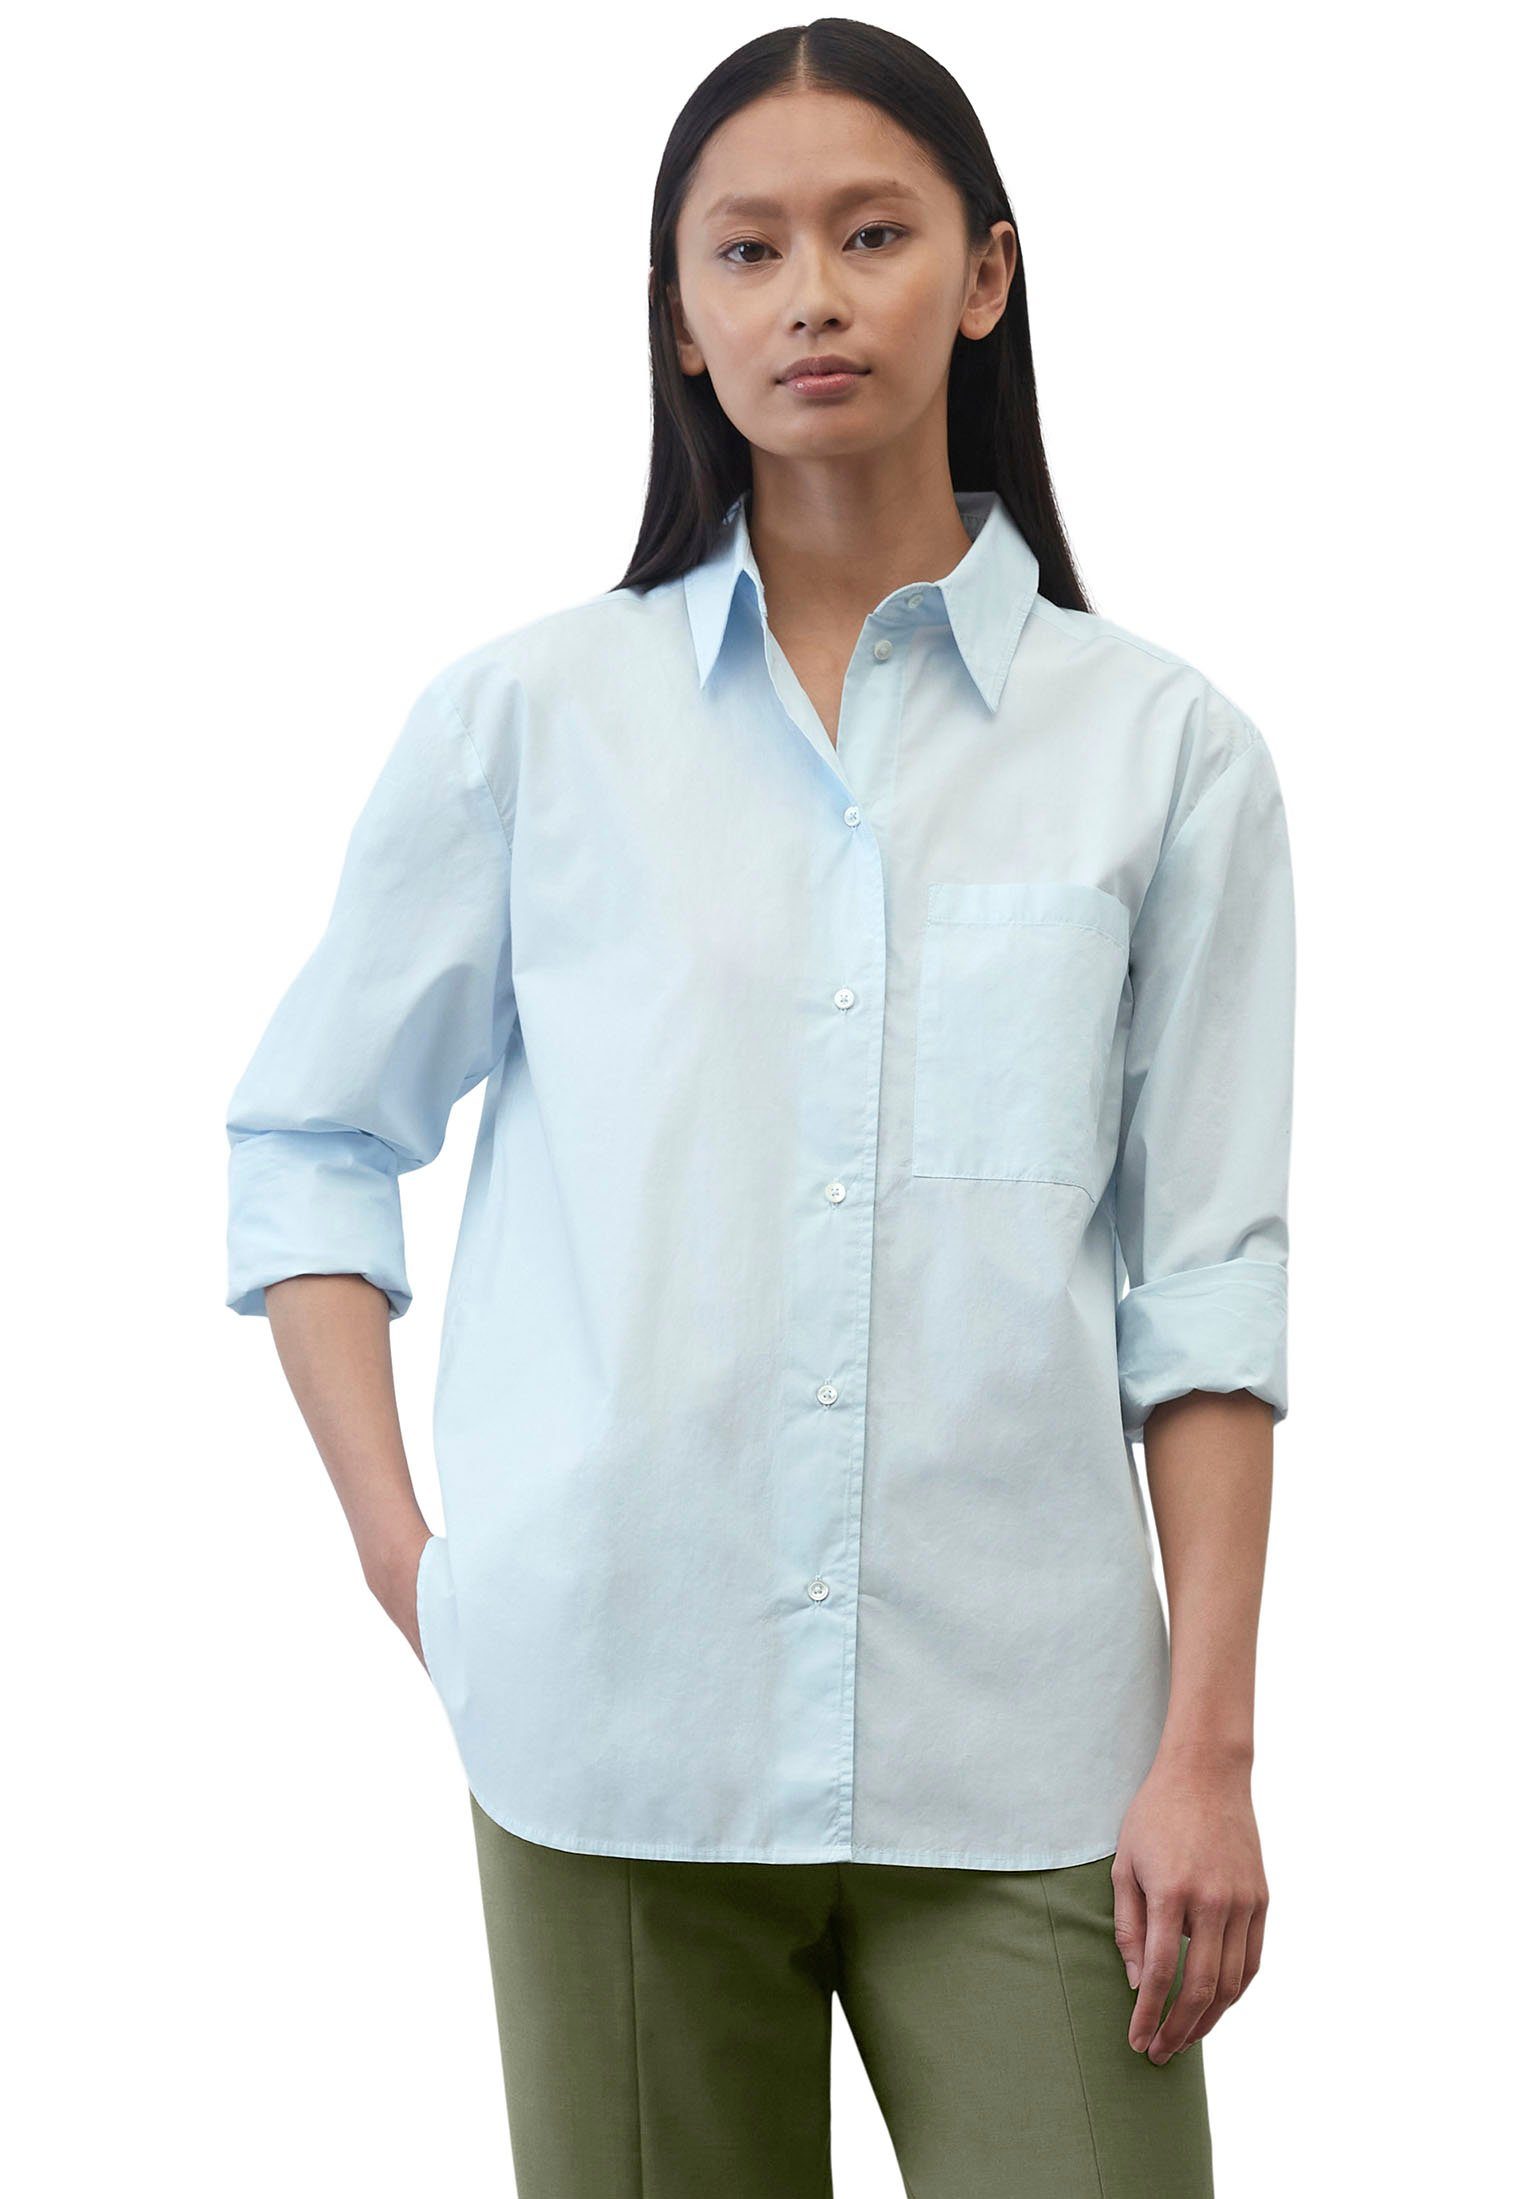 Marc O'Polo Hemdbluse Blouse, long aufgesetzten Brusttasche einer solid kent hellblau pocket, sleeve, patched collar, mit